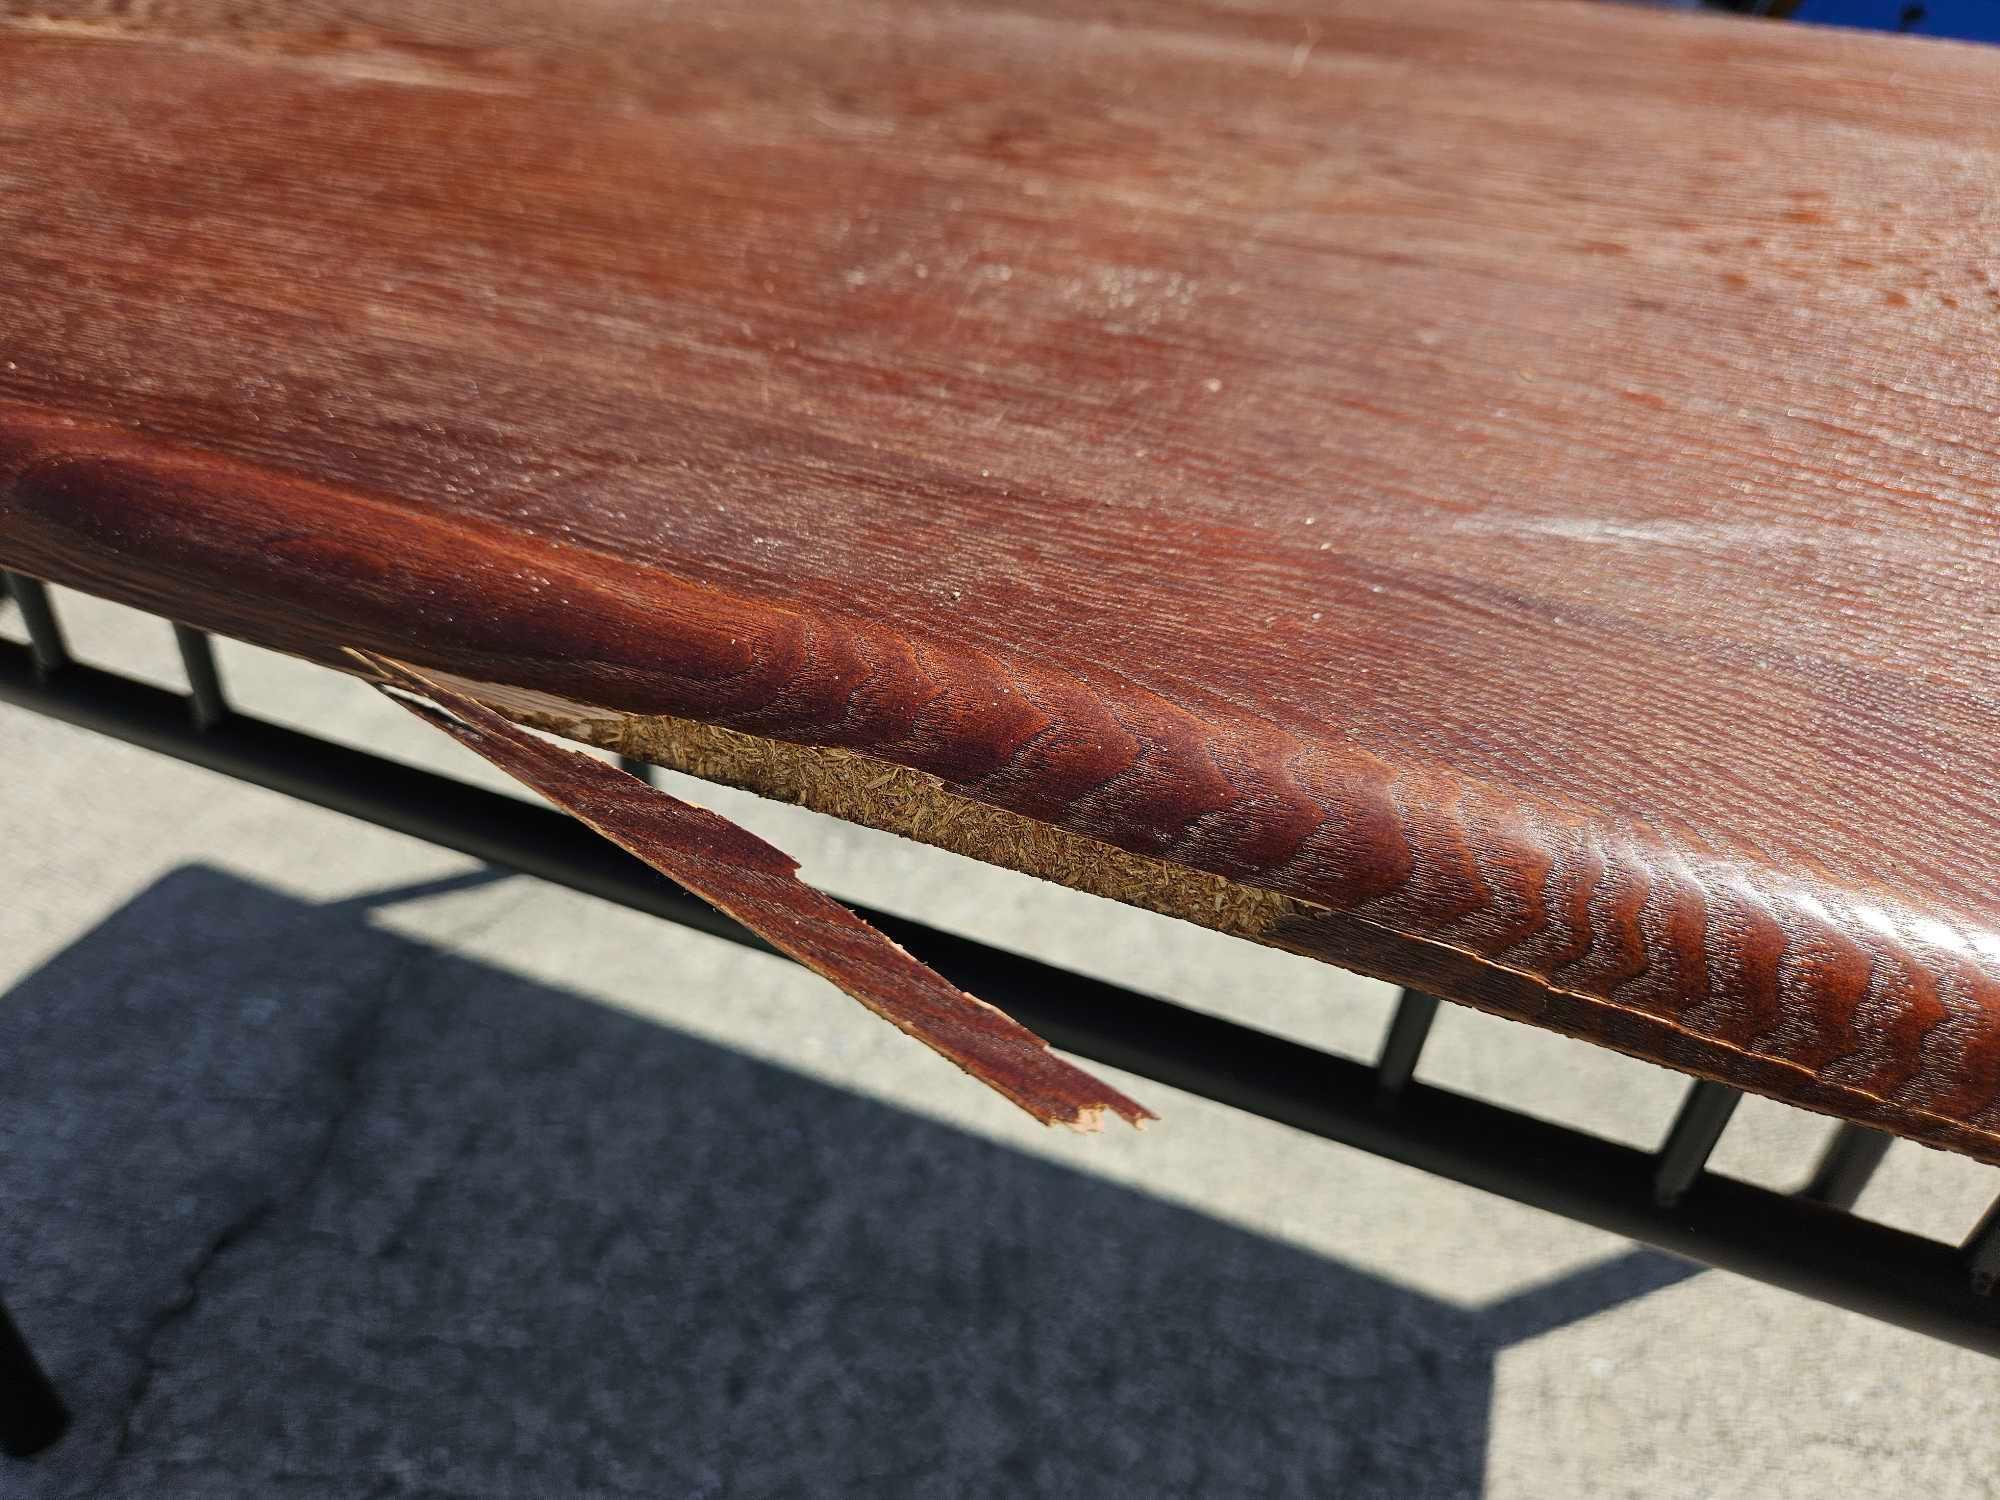 Sturdy Metal and wood veneer top dining table